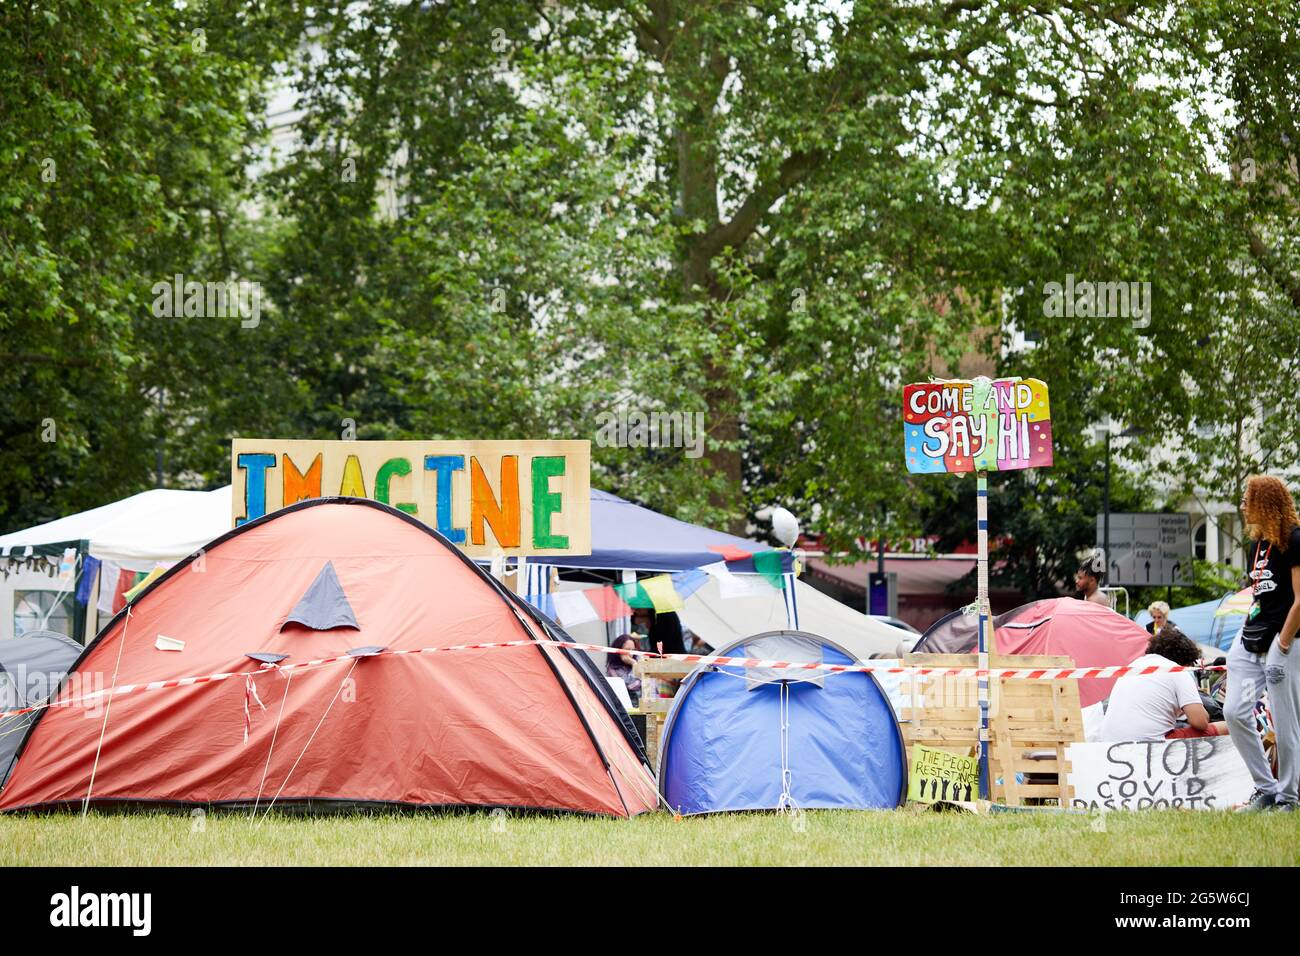 Londres, Reino Unido - 15 de junio de 2021: El adorable campo anti-encierro en Shepherds Bush Green (tomado dos días antes de que el campamento fuera removido por las alabadías). Foto de stock